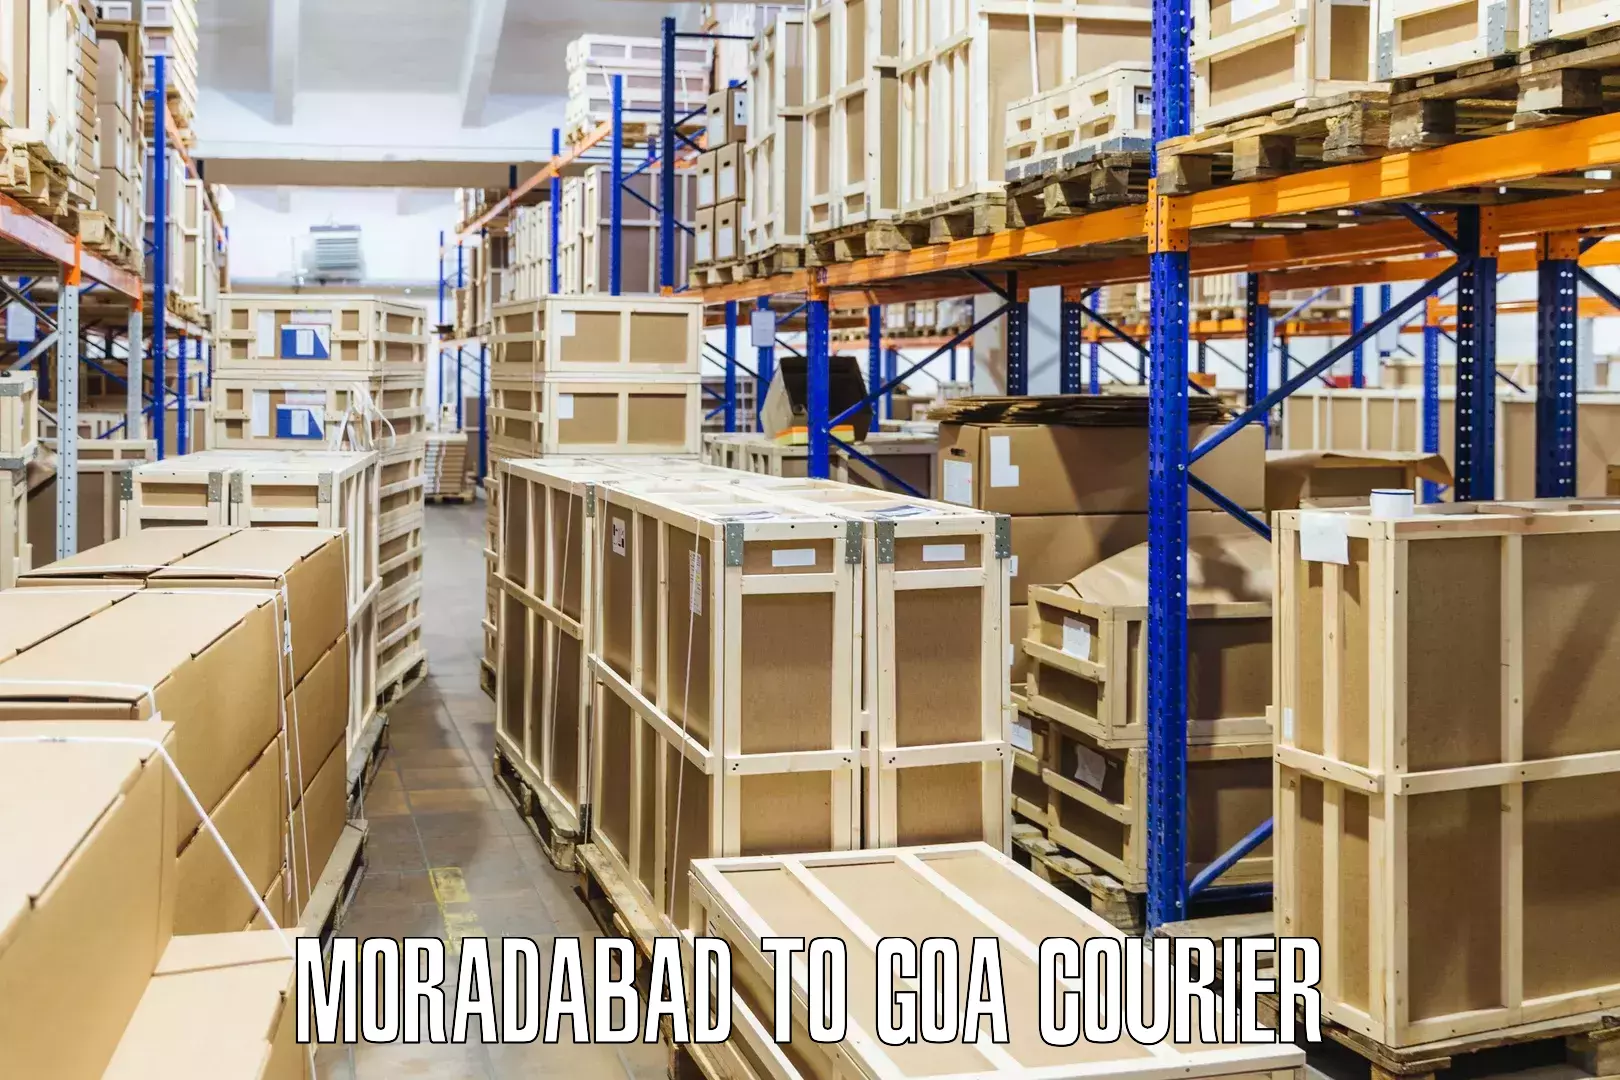 Domestic courier Moradabad to South Goa